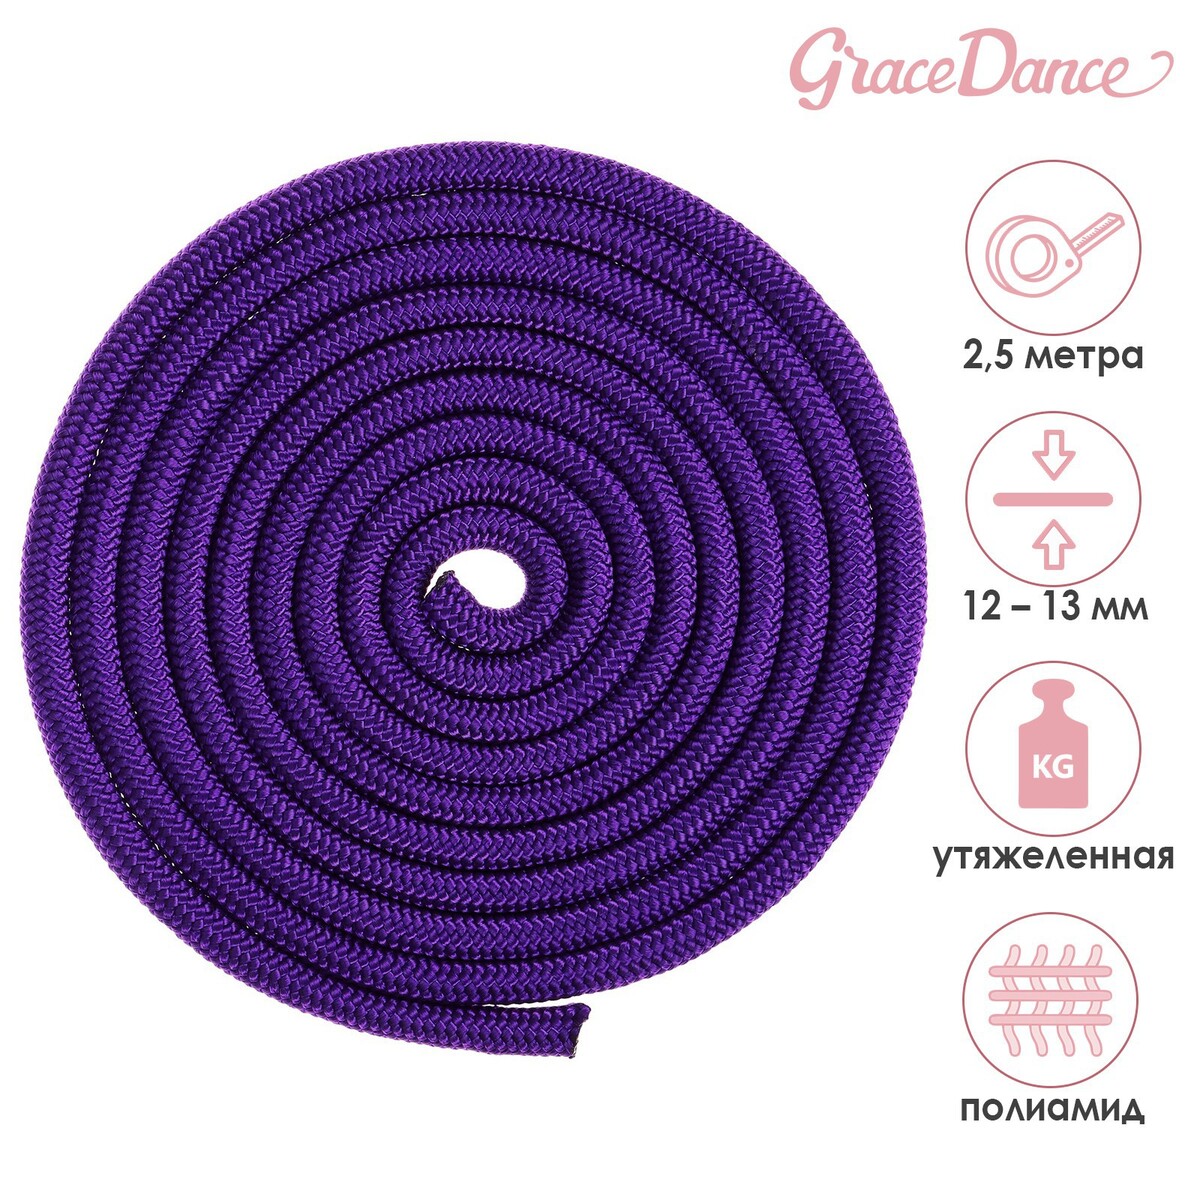 Скакалка для художественной гимнастики утяжеленная grace dance, 2,5 м, цвет фиолетовый булавы для художественной гимнастики indigo 41 см пластик каучук 2шт in018 vw фиолетовый белый